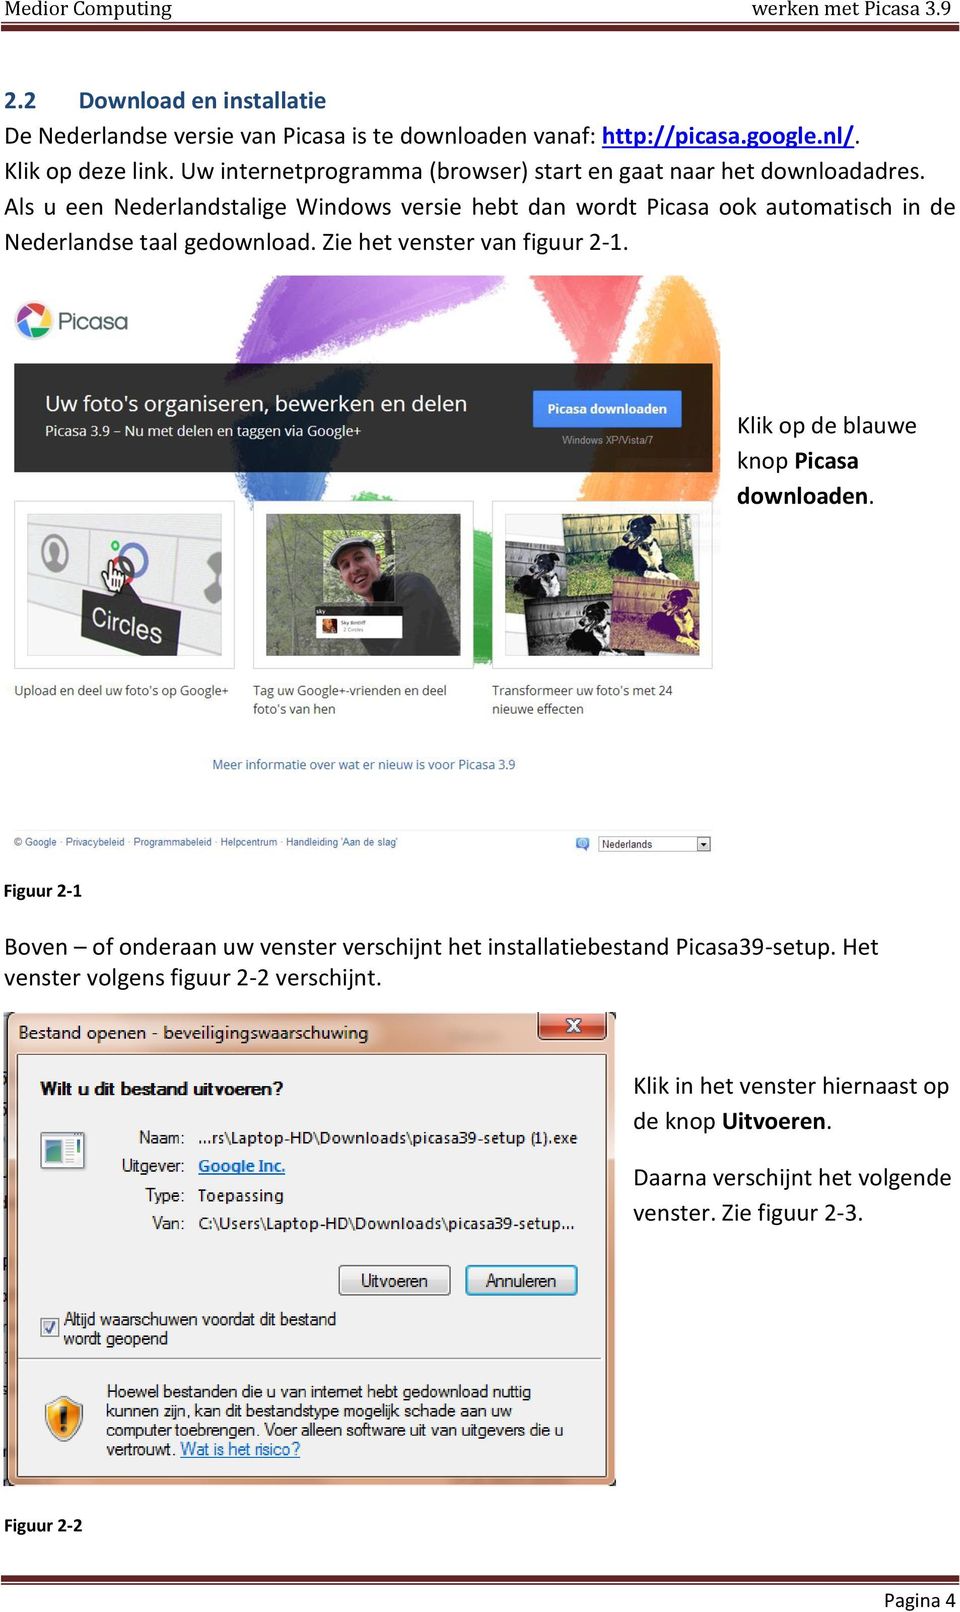 Als u een Nederlandstalige Windows versie hebt dan wordt Picasa ook automatisch in de Nederlandse taal gedownload. Zie het venster van figuur 2-1.